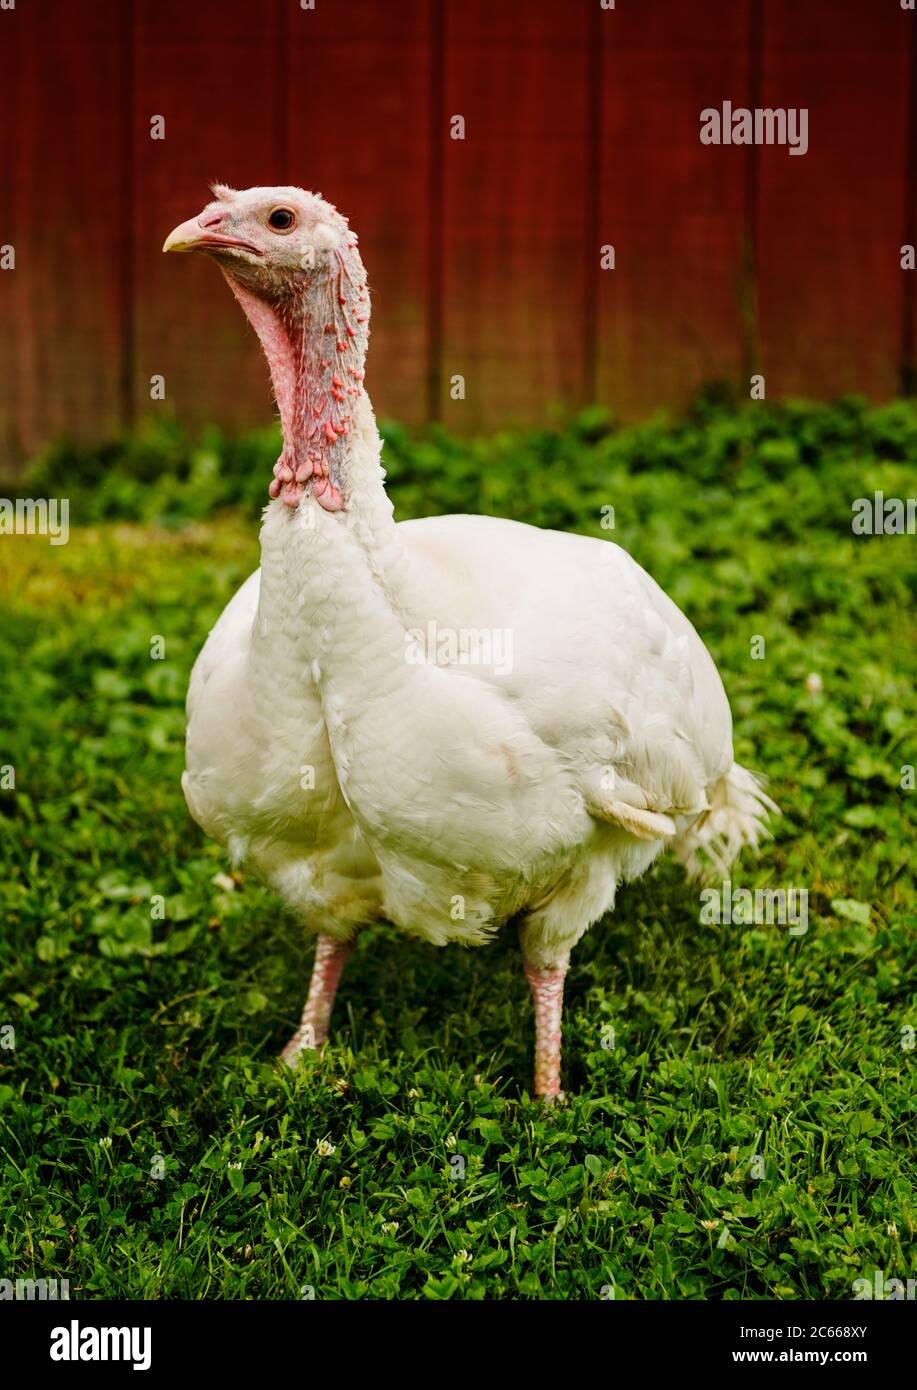 Turkey in a farm pasture Stock Photo